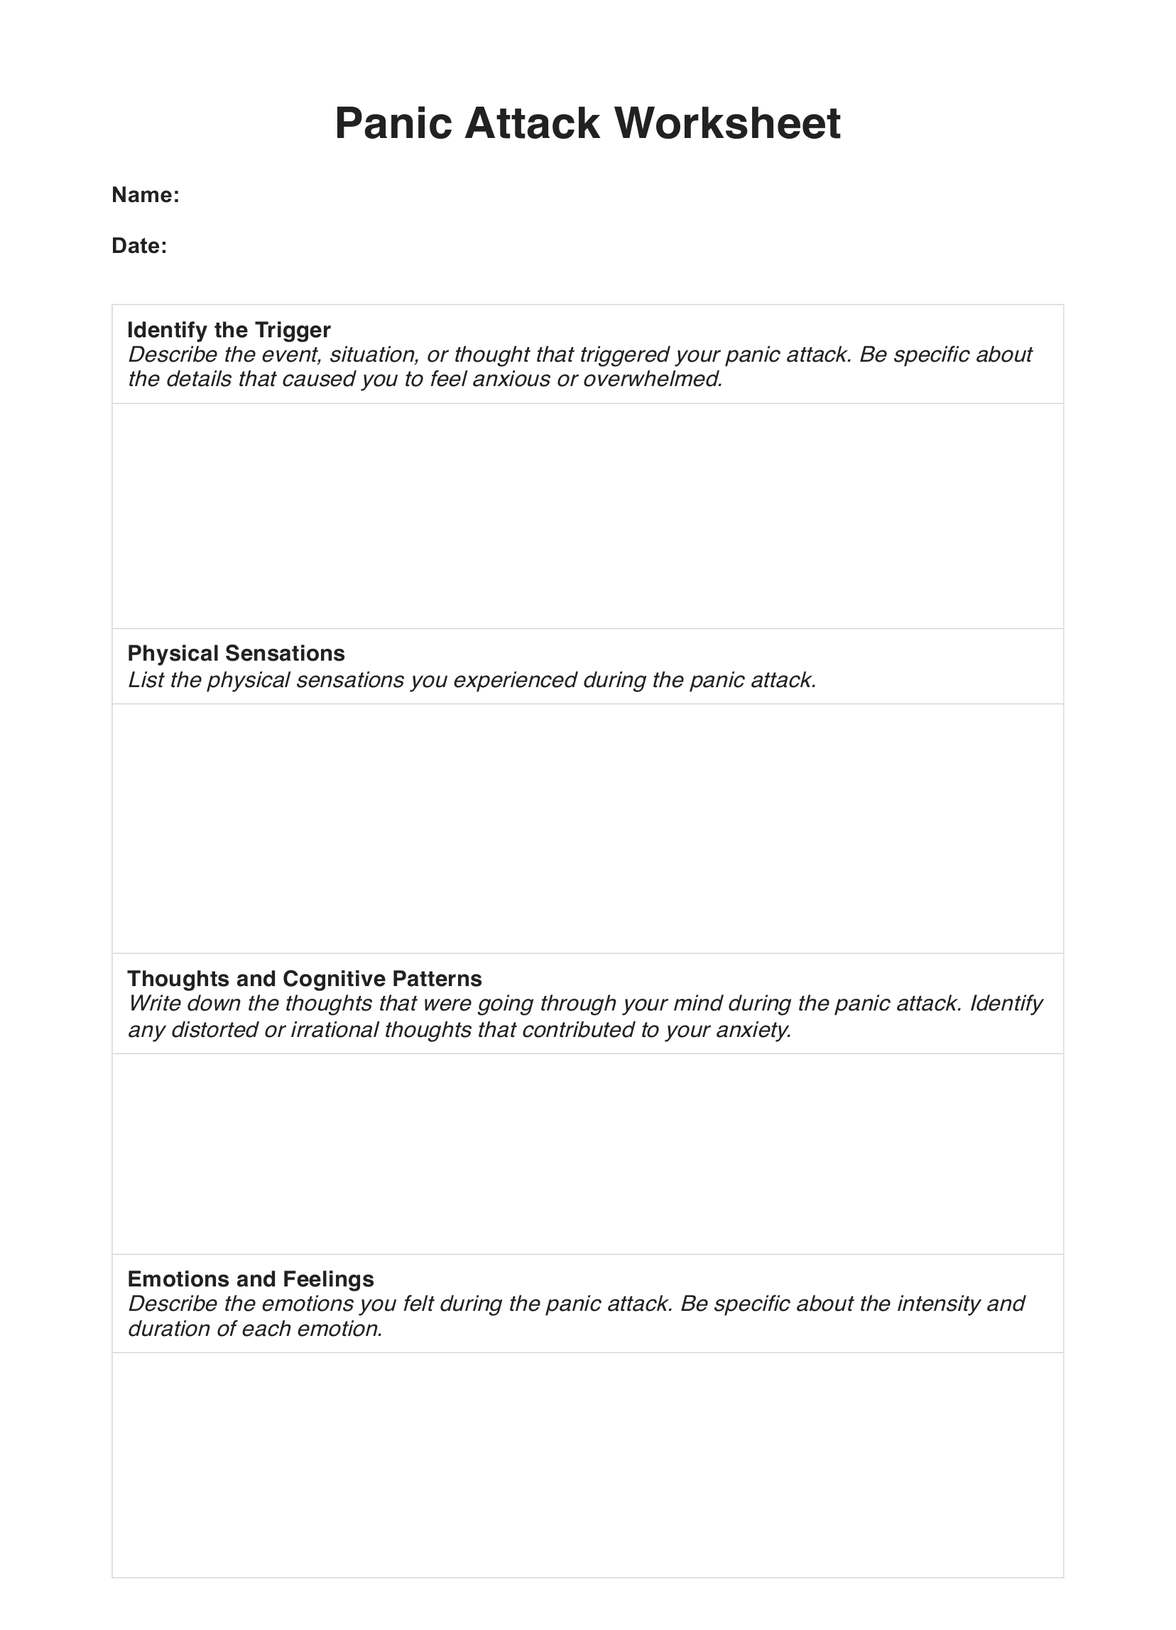 Panic Attack Worksheet PDF Example